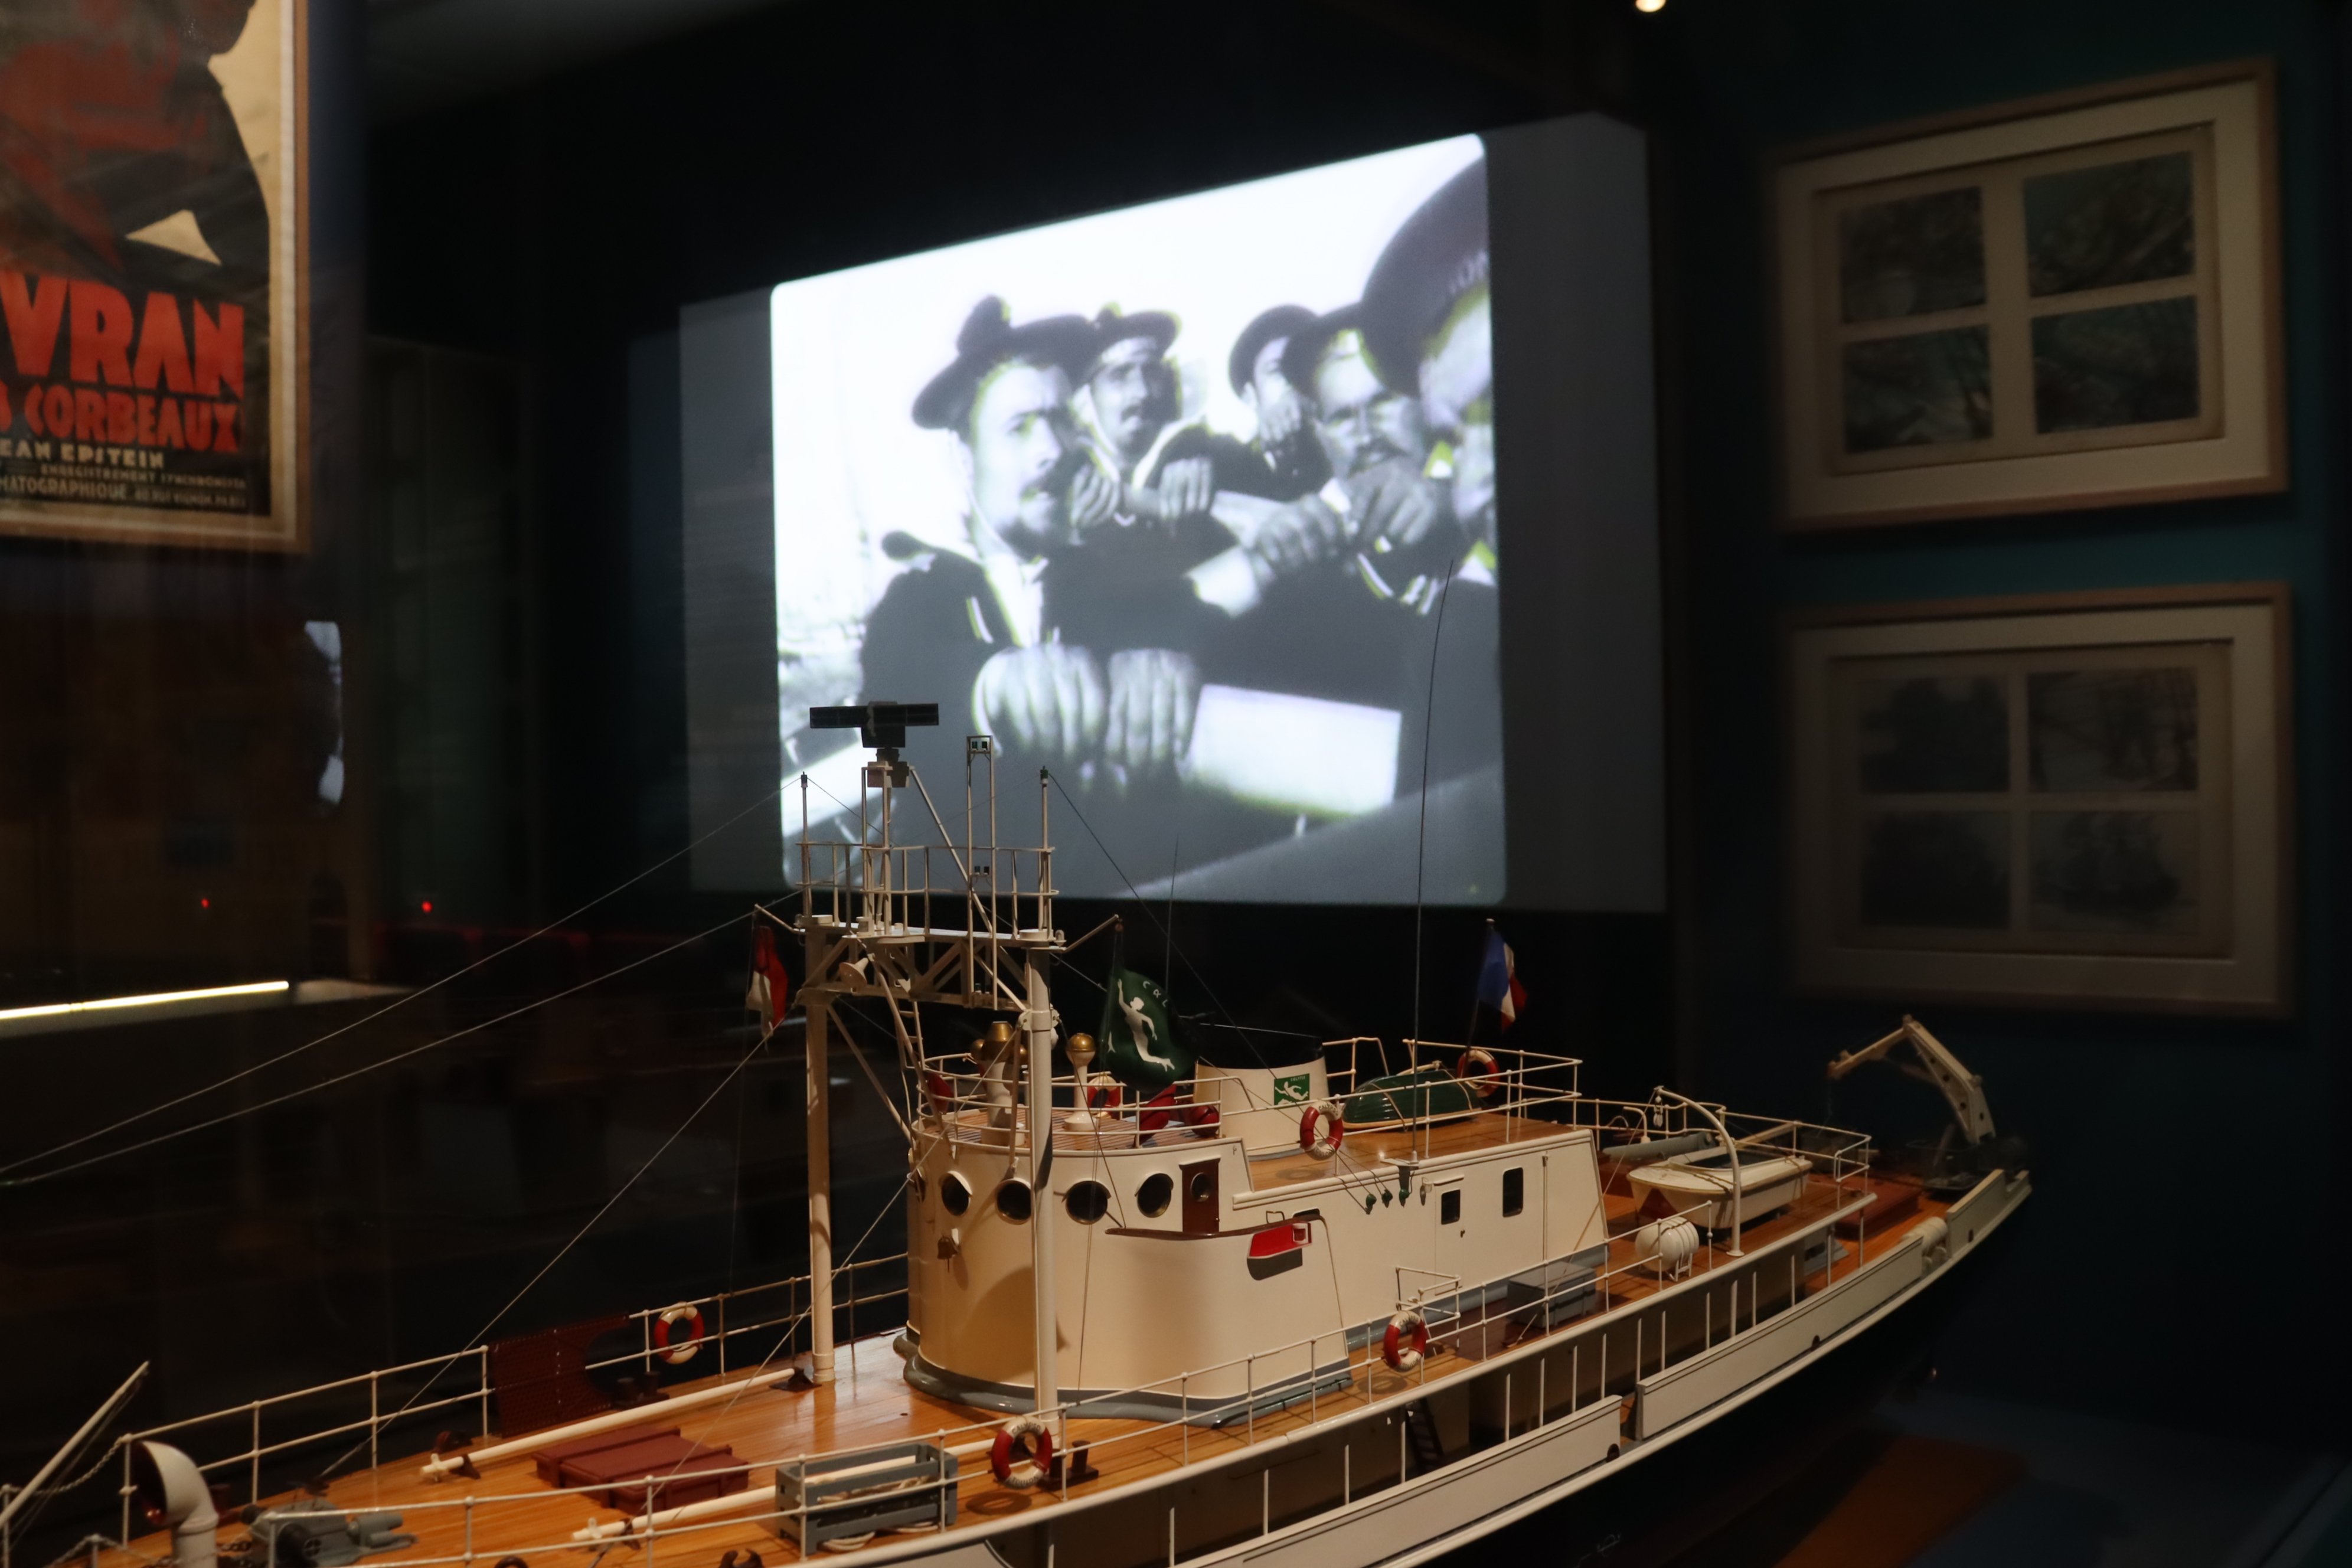 Au sein de l'exposition, des extraits de film sont projetés et des maquettes de bateaux sont exposées